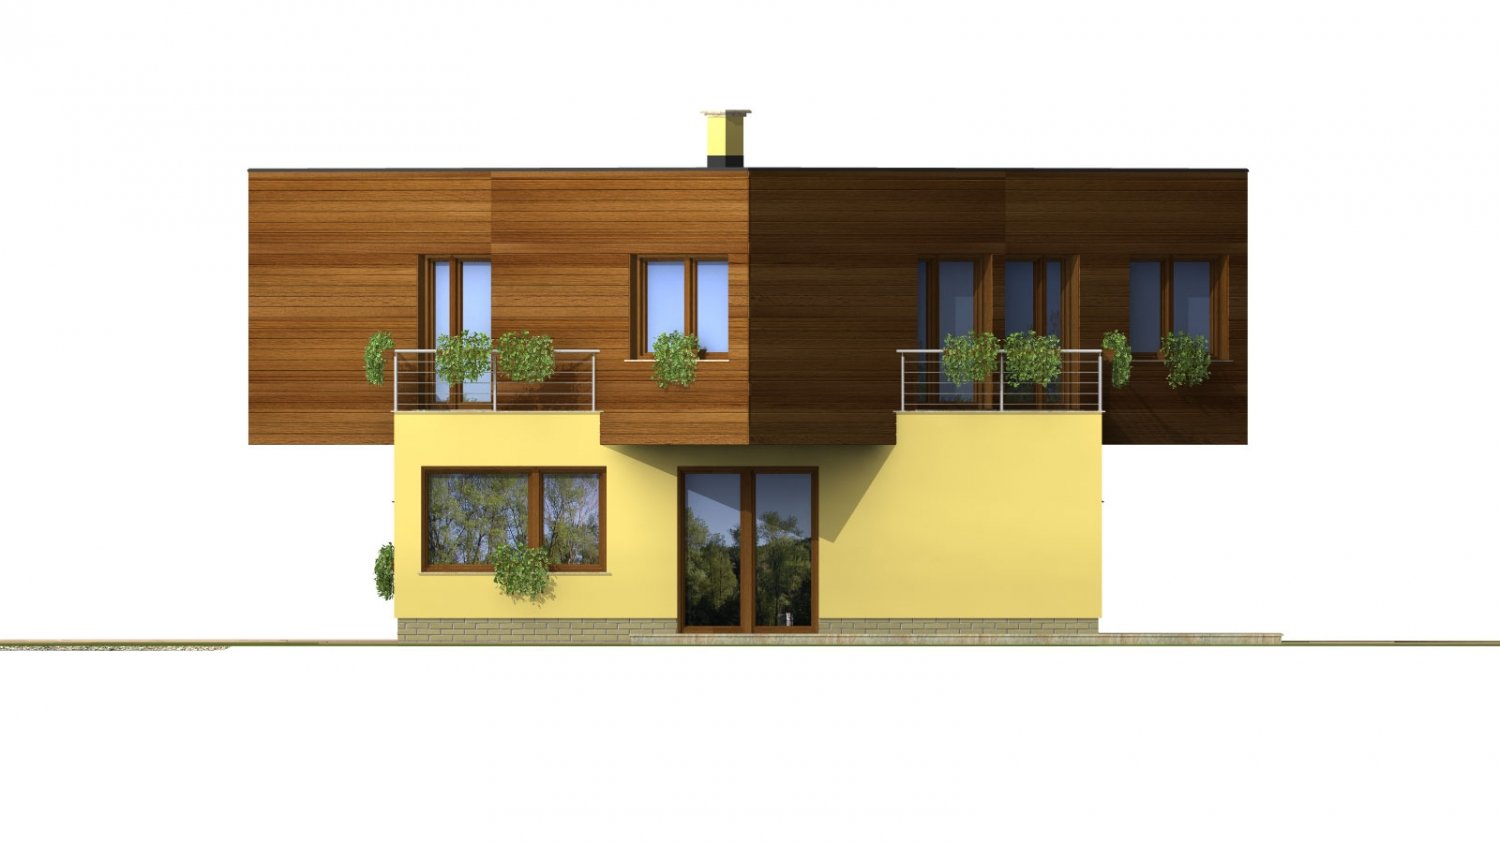 Pohľad 4. - Moderní projekt patrového rodinného domu s rovnou střechou.